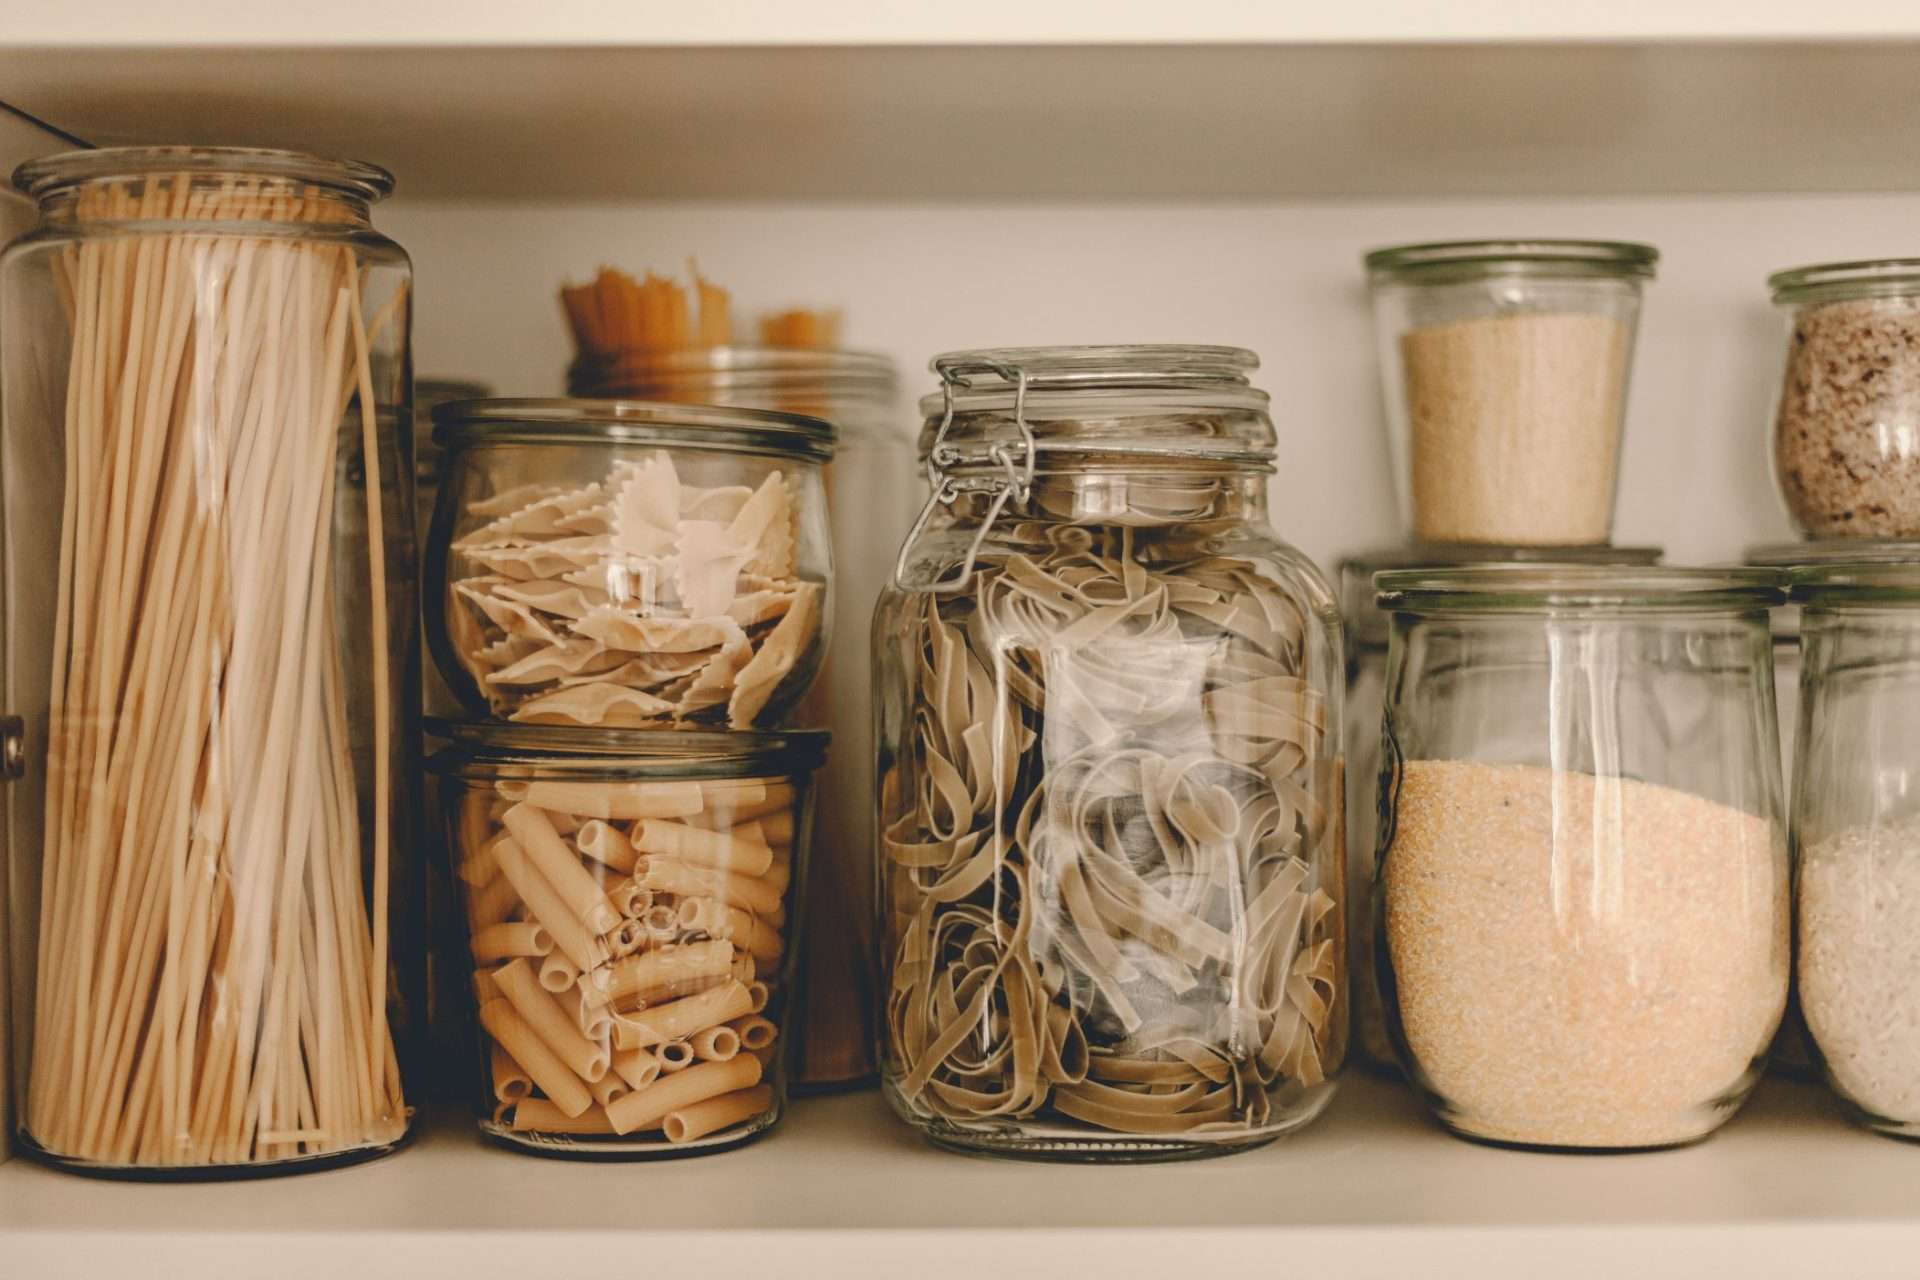 Pasta in glass jars in pantry.